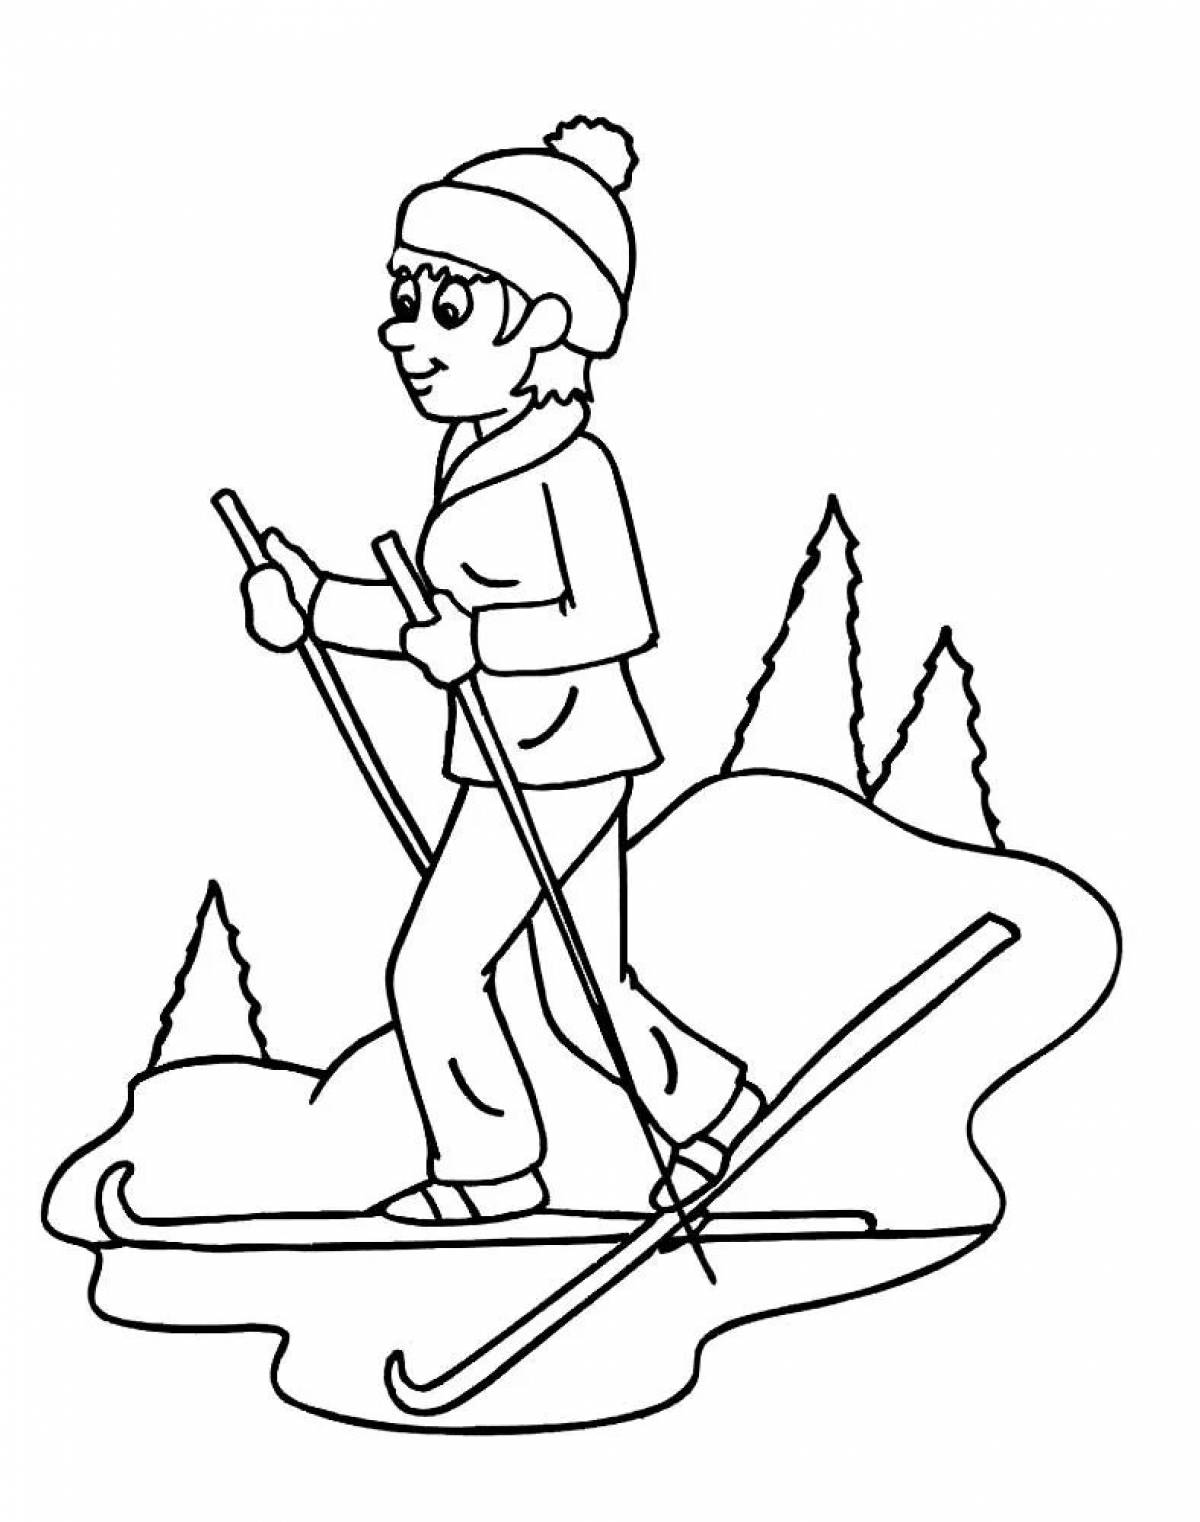 «Лыжник» бесплатная раскраска для детей - мальчиков и девочек